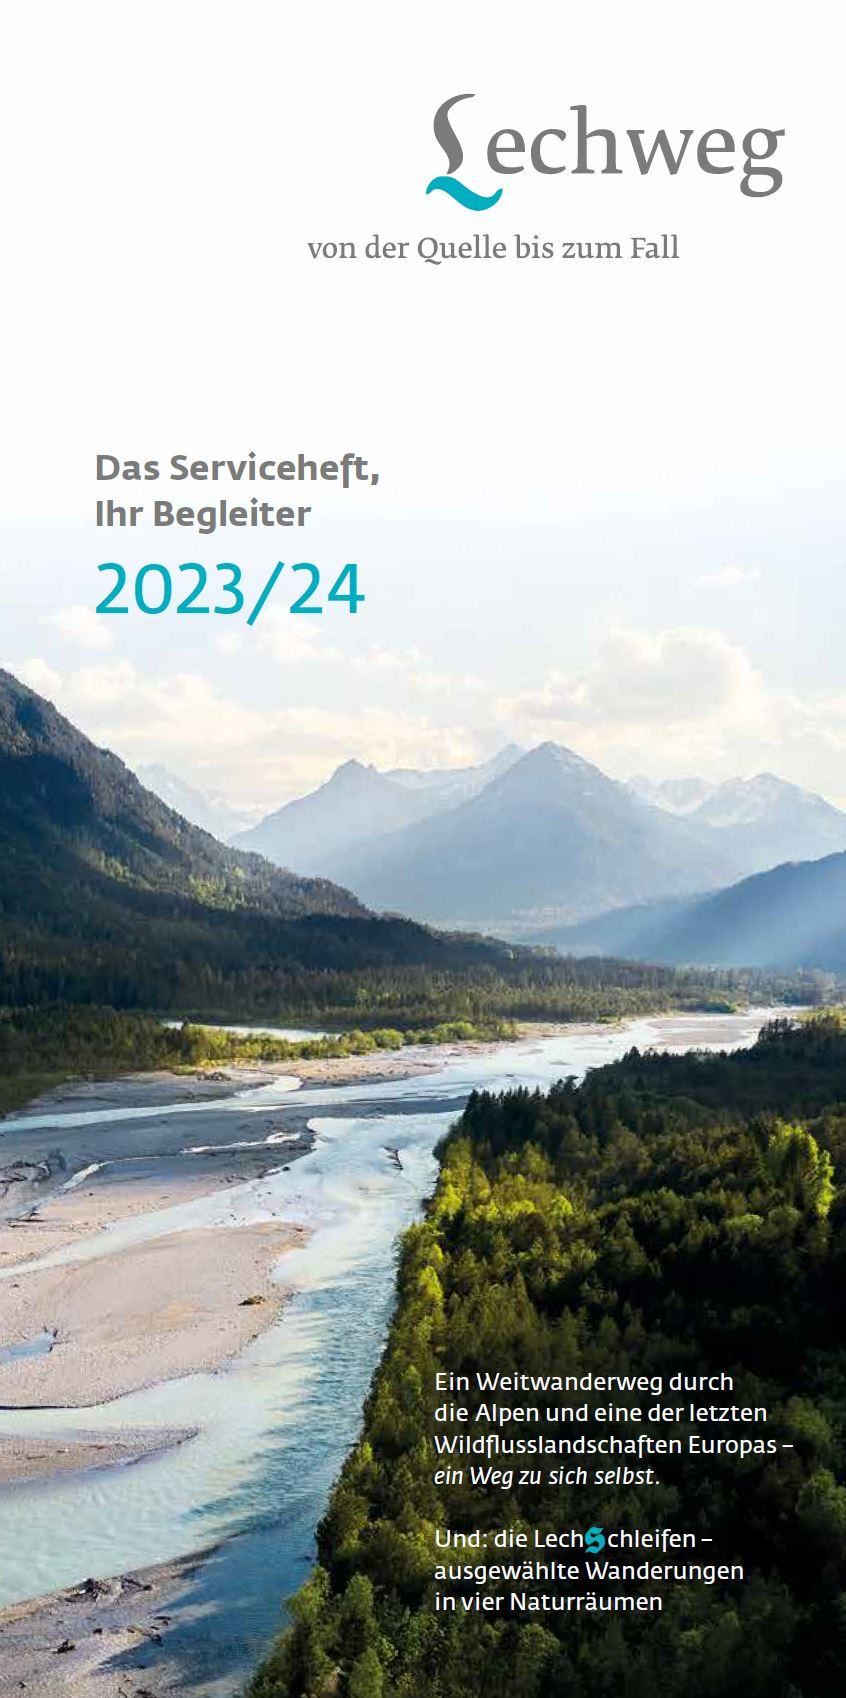 Lechweg Service book 2023/2024